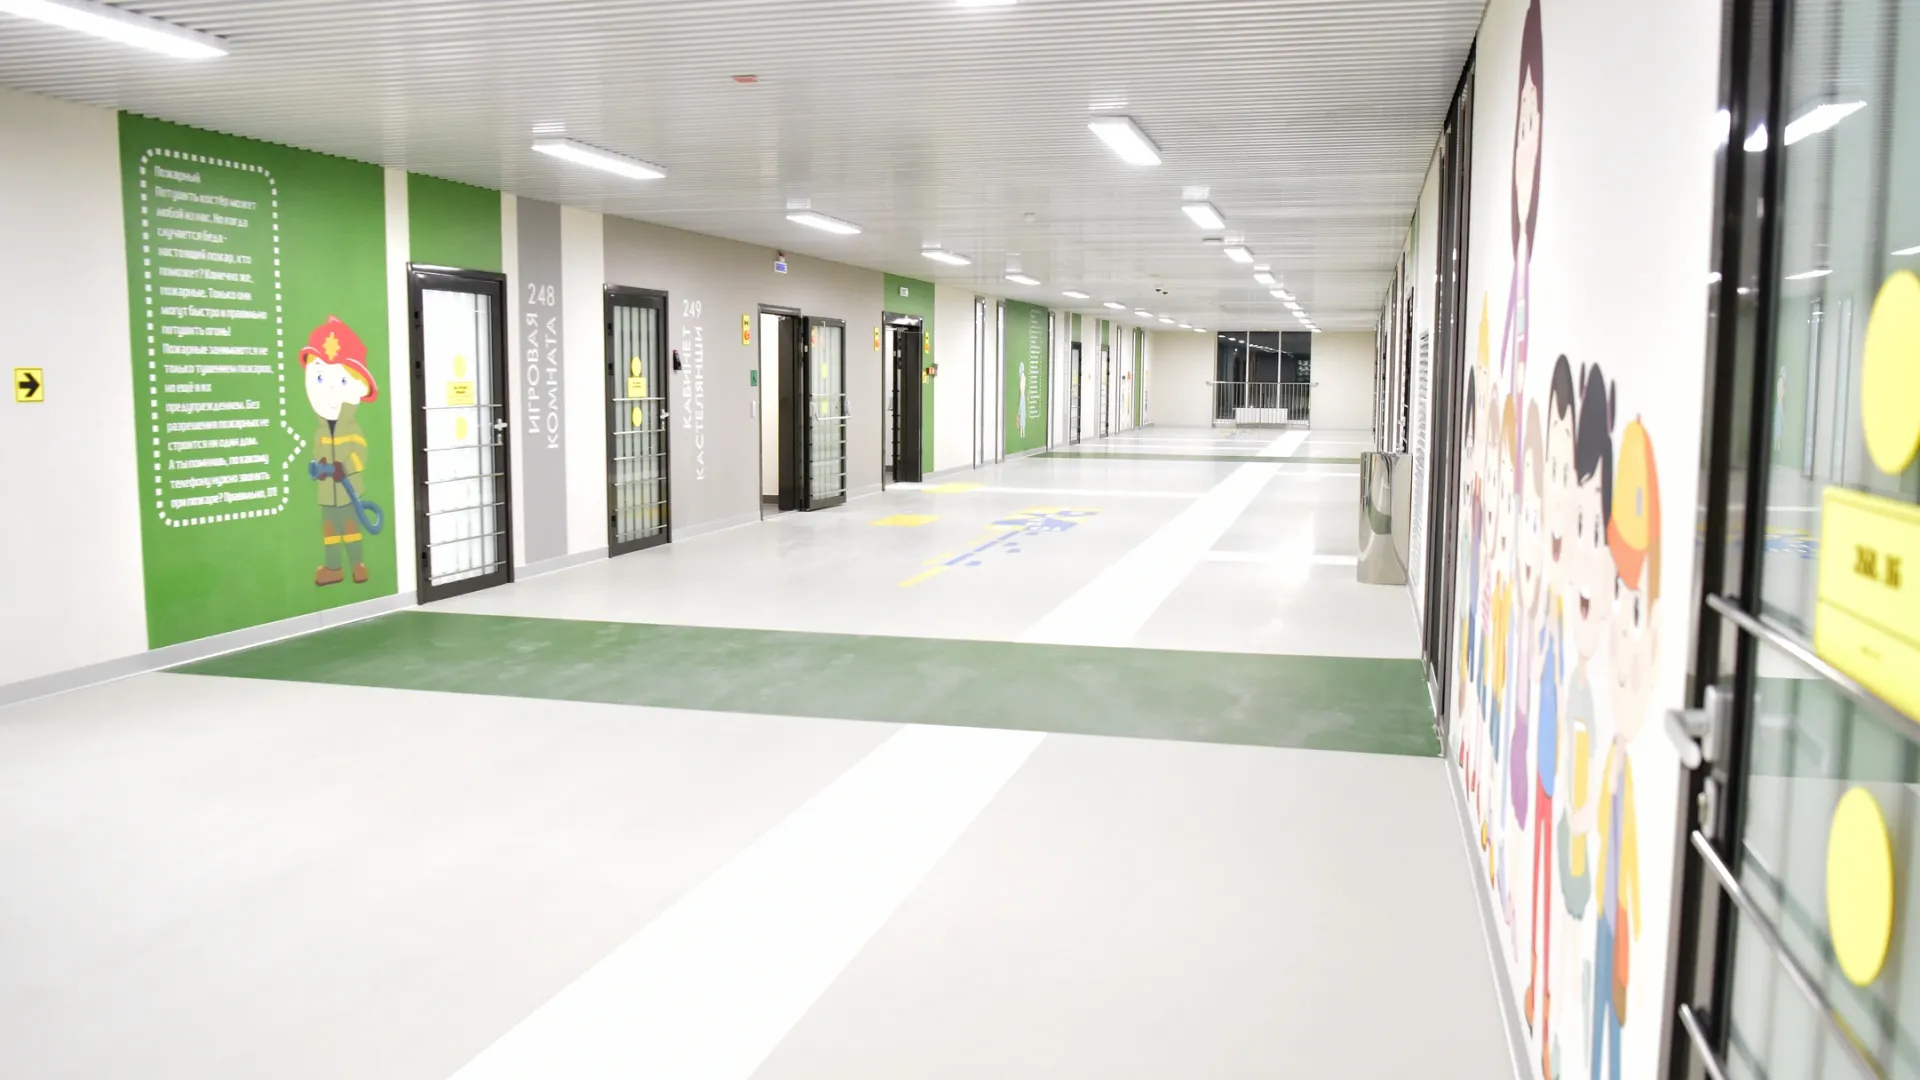 Так выглядит коридор в новой школе в Салехарде. Фото: Андрей Ткачёв/«Ямал-Медиа»